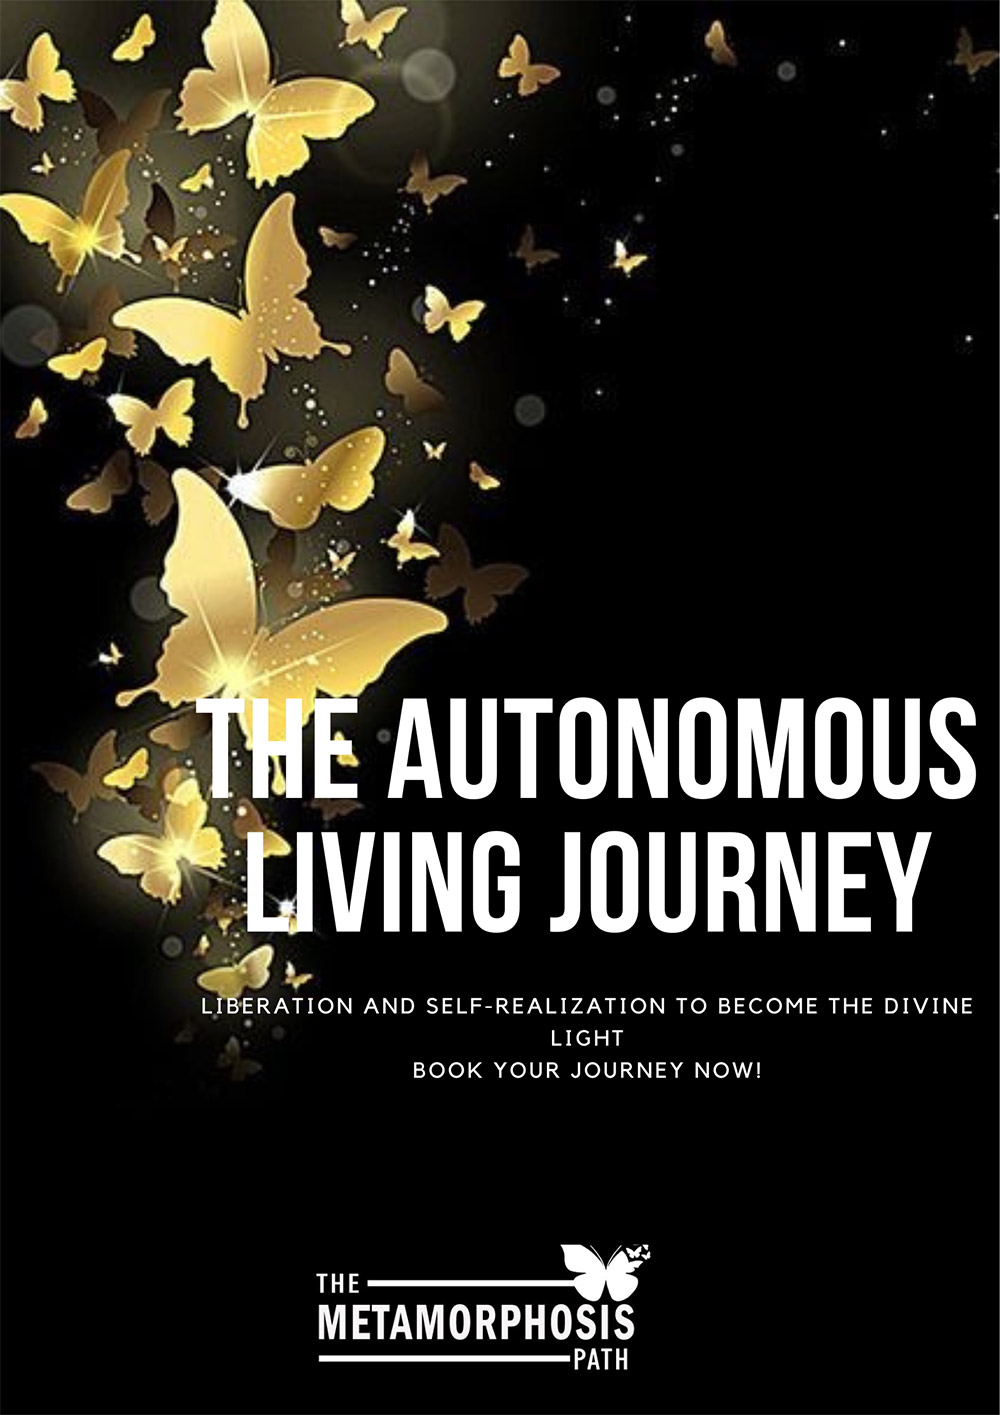 The Autonomous Living Journey